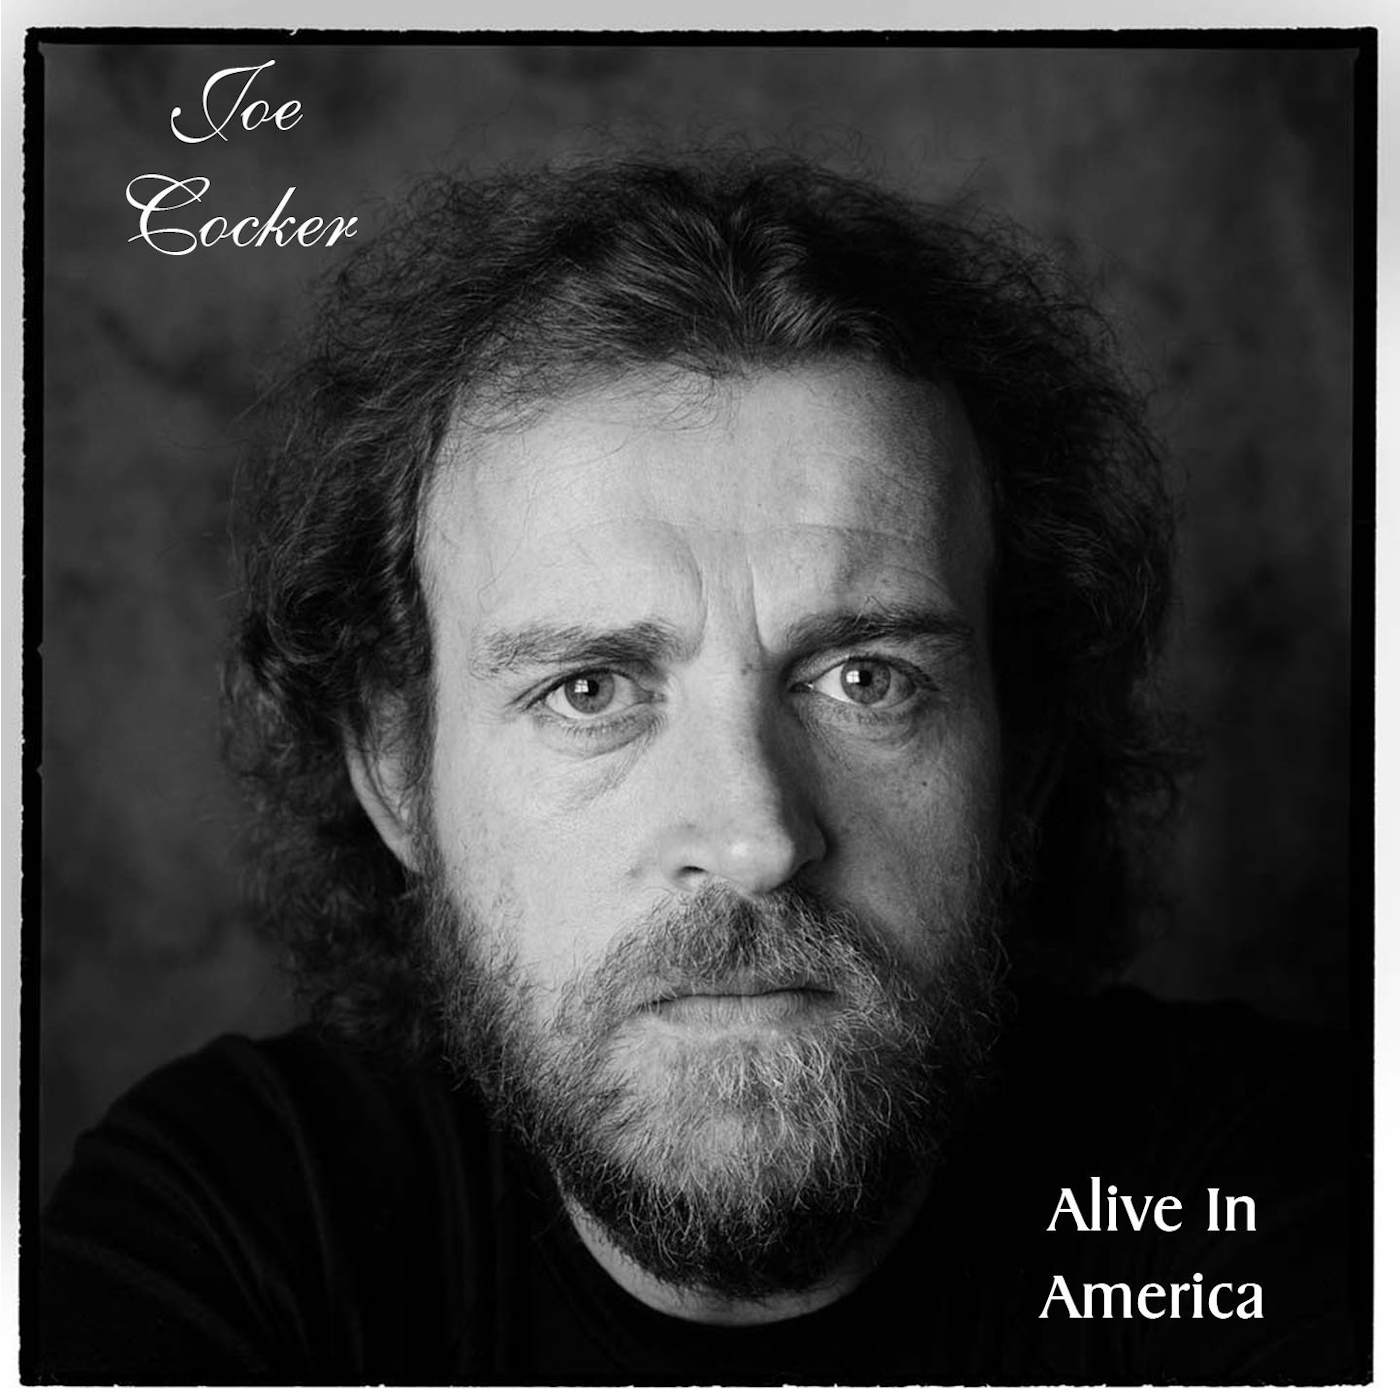 Joe Cocker ALIVE IN AMERICA CD